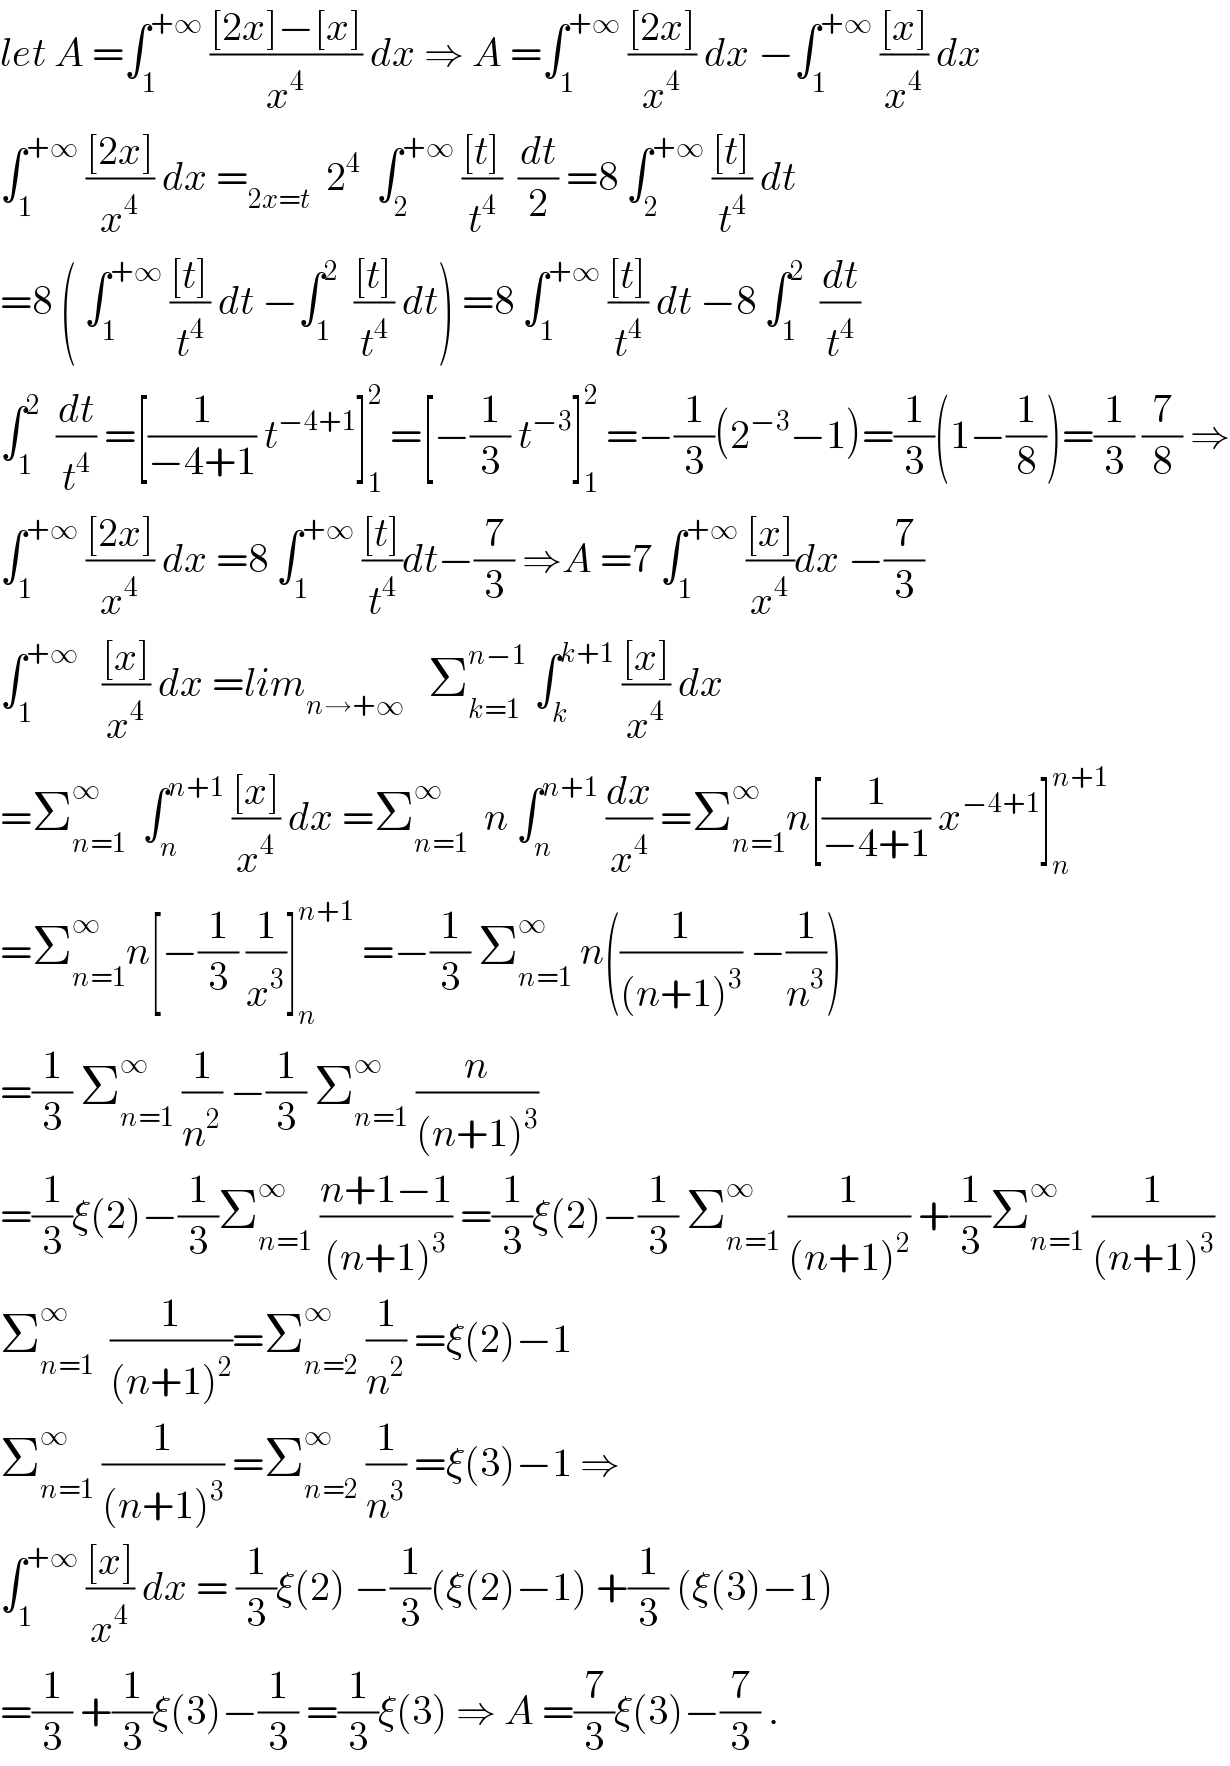 let A =∫_1 ^(+∞)  (([2x]−[x])/x^4 ) dx ⇒ A =∫_1 ^(+∞)  (([2x])/x^4 ) dx −∫_1 ^(+∞)  (([x])/x^4 ) dx  ∫_1 ^(+∞)  (([2x])/x^4 ) dx =_(2x=t)   2^4   ∫_2 ^(+∞)  (([t])/t^4 )  (dt/2) =8 ∫_2 ^(+∞)  (([t])/t^4 ) dt  =8 ( ∫_1 ^(+∞)  (([t])/t^4 ) dt −∫_1 ^2   (([t])/t^4 ) dt) =8 ∫_1 ^(+∞)  (([t])/t^4 ) dt −8 ∫_1 ^2   (dt/t^4 )  ∫_1 ^2   (dt/t^4 ) =[(1/(−4+1)) t^(−4+1) ]_1 ^2  =[−(1/3) t^(−3) ]_1 ^2  =−(1/3)(2^(−3) −1)=(1/3)(1−(1/8))=(1/3) (7/8) ⇒  ∫_1 ^(+∞)  (([2x])/x^4 ) dx =8 ∫_1 ^(+∞)  (([t])/t^4 )dt−(7/3) ⇒A =7 ∫_1 ^(+∞)  (([x])/x^4 )dx −(7/3)  ∫_1 ^(+∞)    (([x])/x^4 ) dx =lim_(n→+∞)    Σ_(k=1) ^(n−1)  ∫_k ^(k+1)  (([x])/x^4 ) dx  =Σ_(n=1) ^∞   ∫_n ^(n+1)  (([x])/x^4 ) dx =Σ_(n=1) ^∞   n ∫_n ^(n+1)  (dx/x^4 ) =Σ_(n=1) ^∞ n[(1/(−4+1)) x^(−4+1) ]_n ^(n+1)   =Σ_(n=1) ^∞ n[−(1/3) (1/x^3 )]_n ^(n+1)  =−(1/3) Σ_(n=1) ^∞  n((1/((n+1)^3 )) −(1/n^3 ))  =(1/3) Σ_(n=1) ^∞  (1/n^2 ) −(1/3) Σ_(n=1) ^∞  (n/((n+1)^3 ))  =(1/3)ξ(2)−(1/3)Σ_(n=1) ^∞  ((n+1−1)/((n+1)^3 )) =(1/3)ξ(2)−(1/3) Σ_(n=1) ^∞  (1/((n+1)^2 )) +(1/3)Σ_(n=1) ^∞  (1/((n+1)^3 ))  Σ_(n=1) ^∞   (1/((n+1)^2 ))=Σ_(n=2) ^∞  (1/n^2 ) =ξ(2)−1  Σ_(n=1) ^∞  (1/((n+1)^3 )) =Σ_(n=2) ^∞  (1/n^3 ) =ξ(3)−1 ⇒  ∫_1 ^(+∞)  (([x])/x^4 ) dx = (1/3)ξ(2) −(1/3)(ξ(2)−1) +(1/3) (ξ(3)−1)  =(1/3) +(1/3)ξ(3)−(1/3) =(1/3)ξ(3) ⇒ A =(7/3)ξ(3)−(7/3) .  